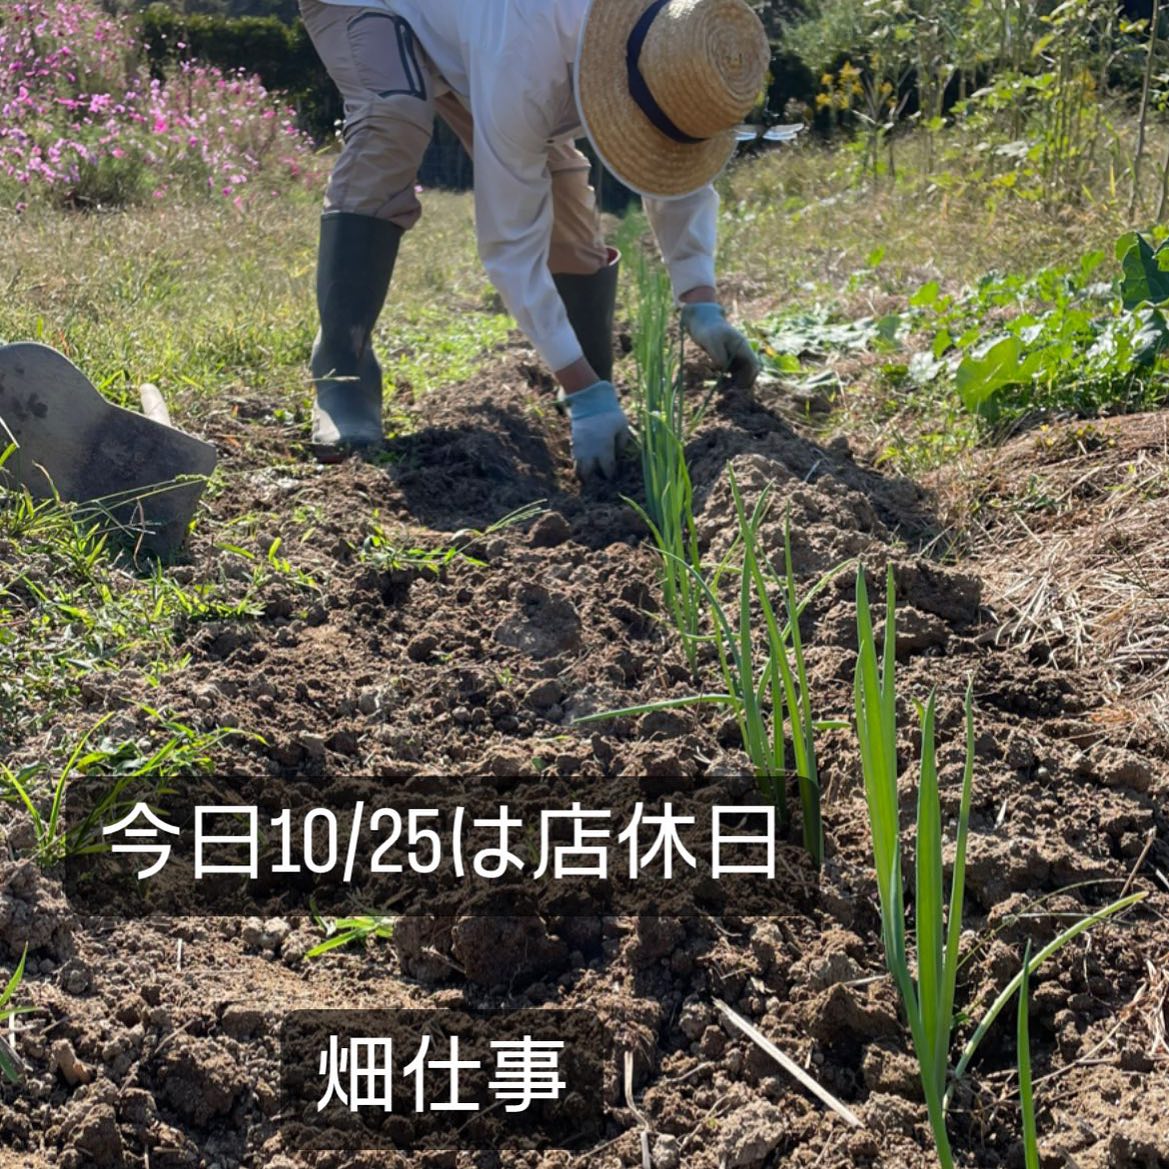 今日10/25は先日植えた根深ネギに土寄せをしています。こうやって何回か土を寄せて、太陽の光が当たらない茎の部分ができるようにすることで、あの白い部分が出来上がります。鍬を使うのも、中腰の姿勢も、これがなかなかの重労働なのだ〜#イルフェソワフ #ワイン#日本酒 #薬院#警固#焼き鳥#ナチュラルワイン#ヴァンナチュール#自然派ワイン#根深ネギの土寄せ